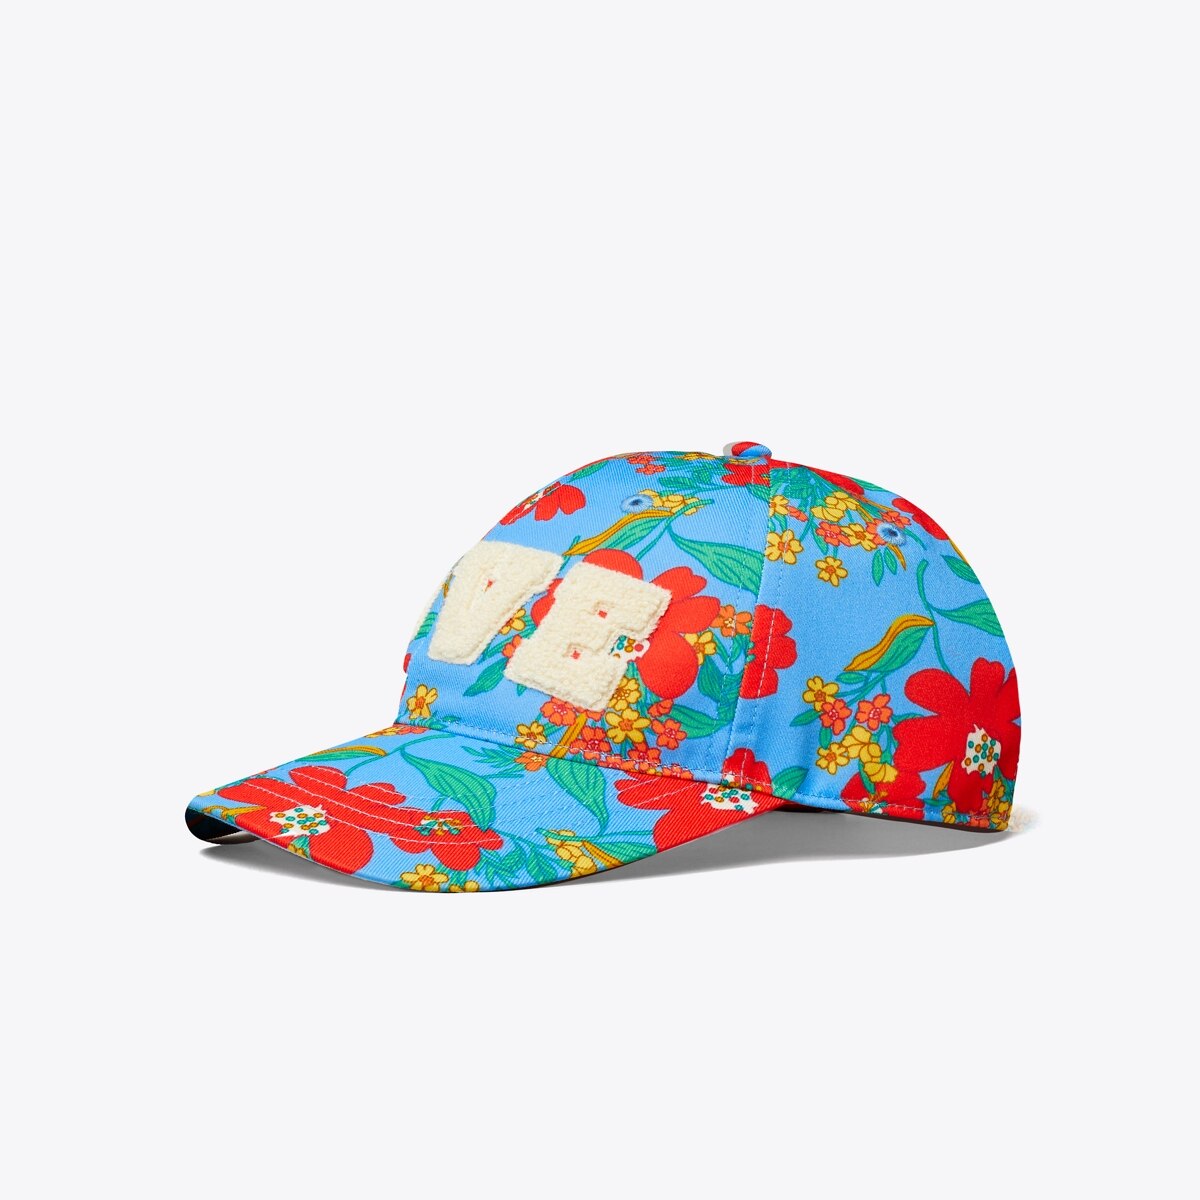 Love Cap: Women's Designer Hats